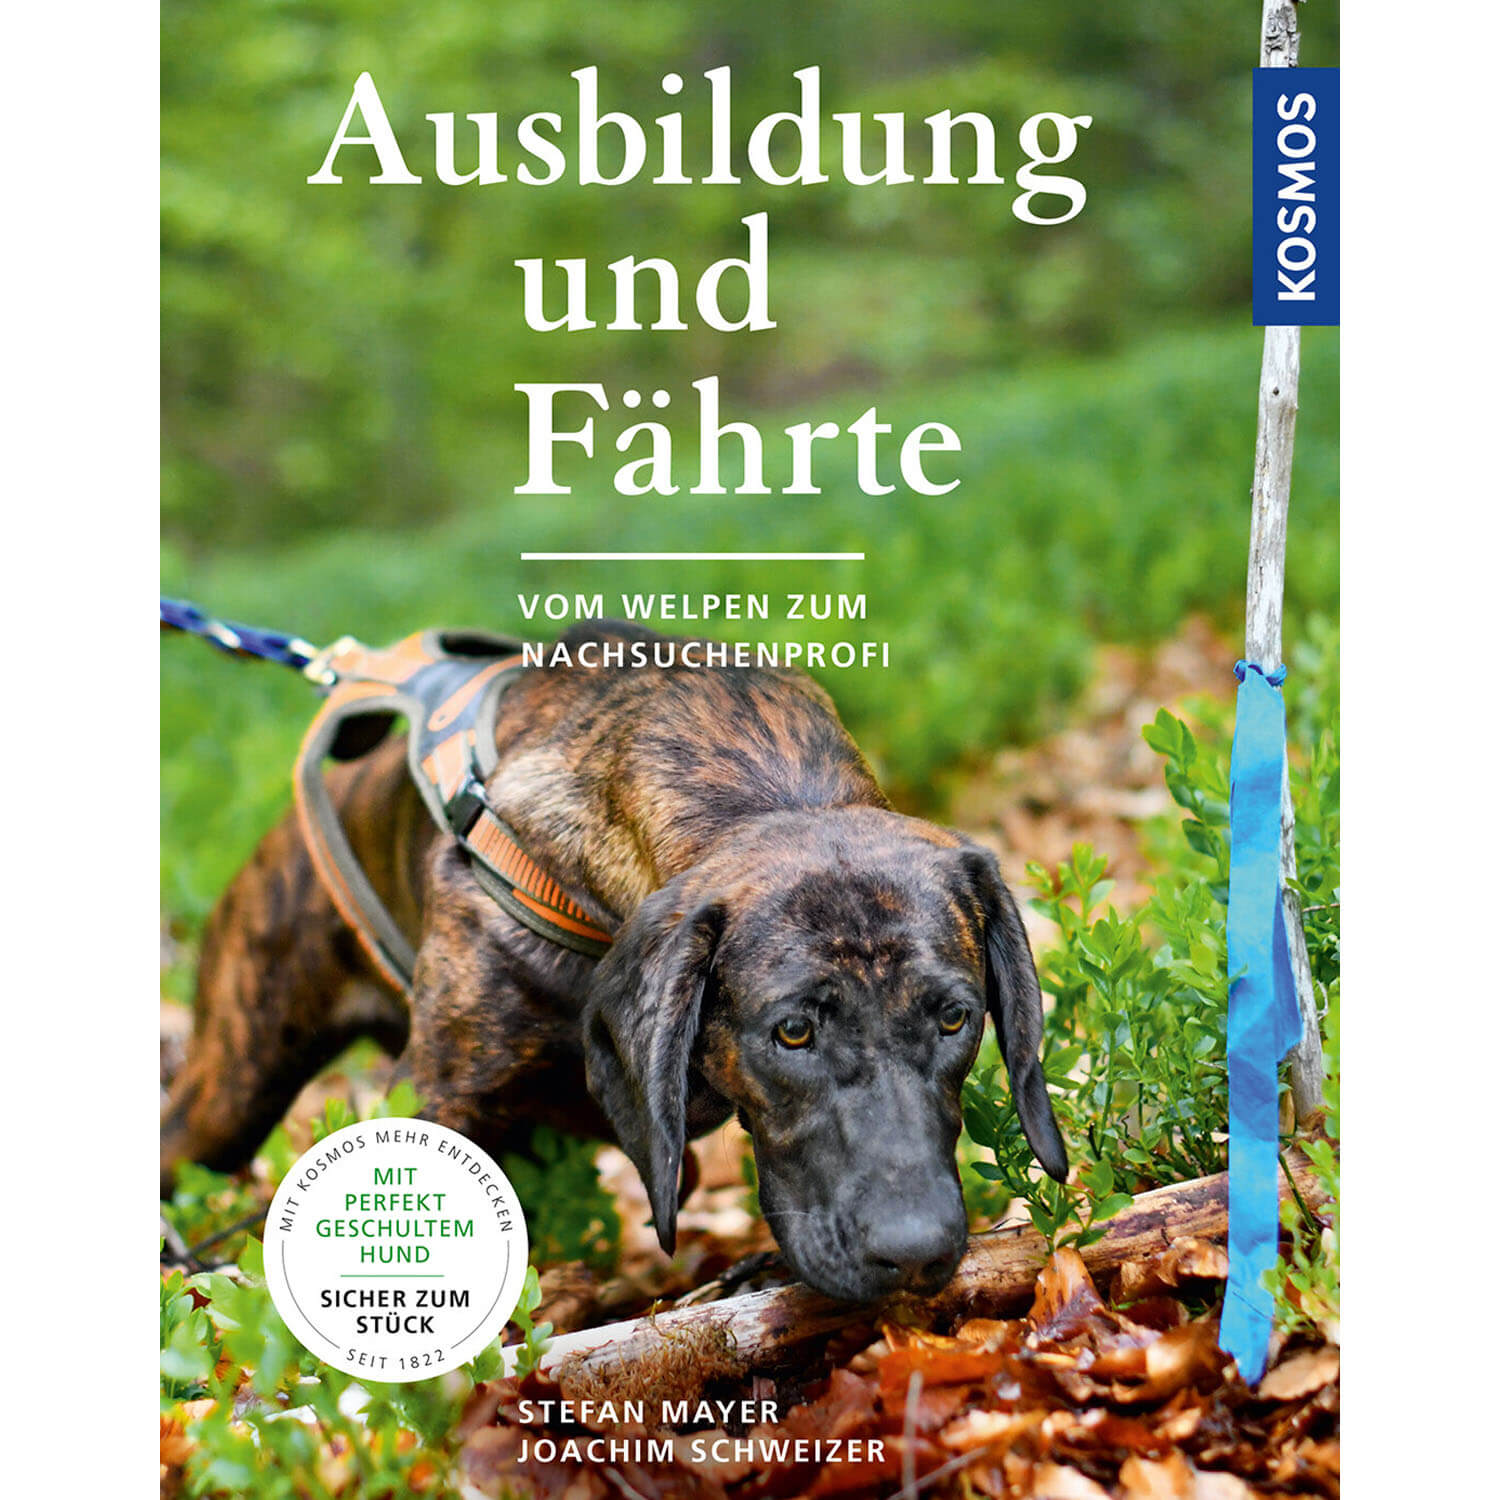 Ausbildung und Fährte - Buch - Stefan Mayer & J. Schweizer - Jagdbücher